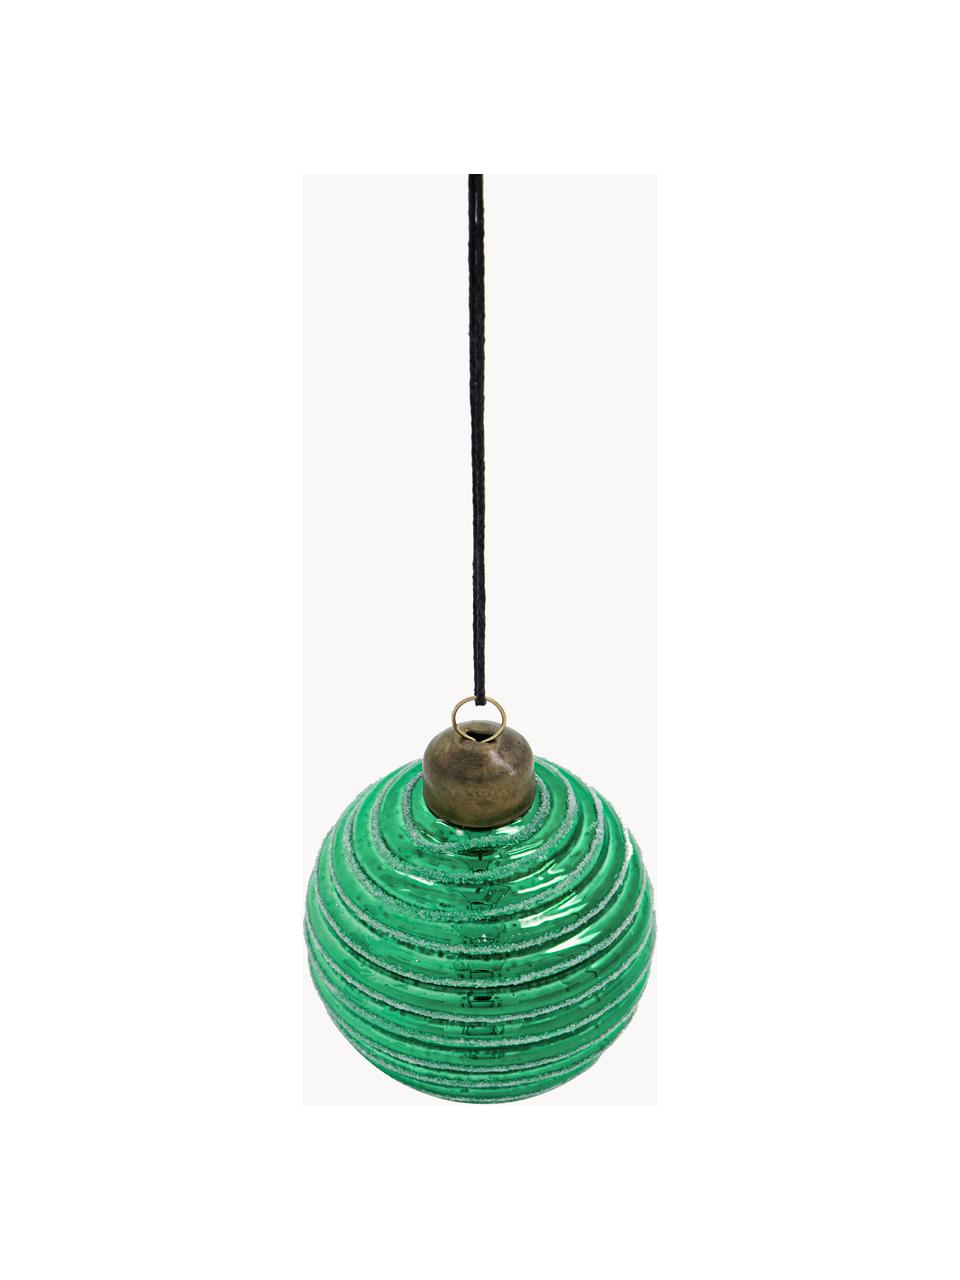 Komplet bombek Lolli, 6 elem., Zielony, jasny zielony, Ø 6 x 7 cm